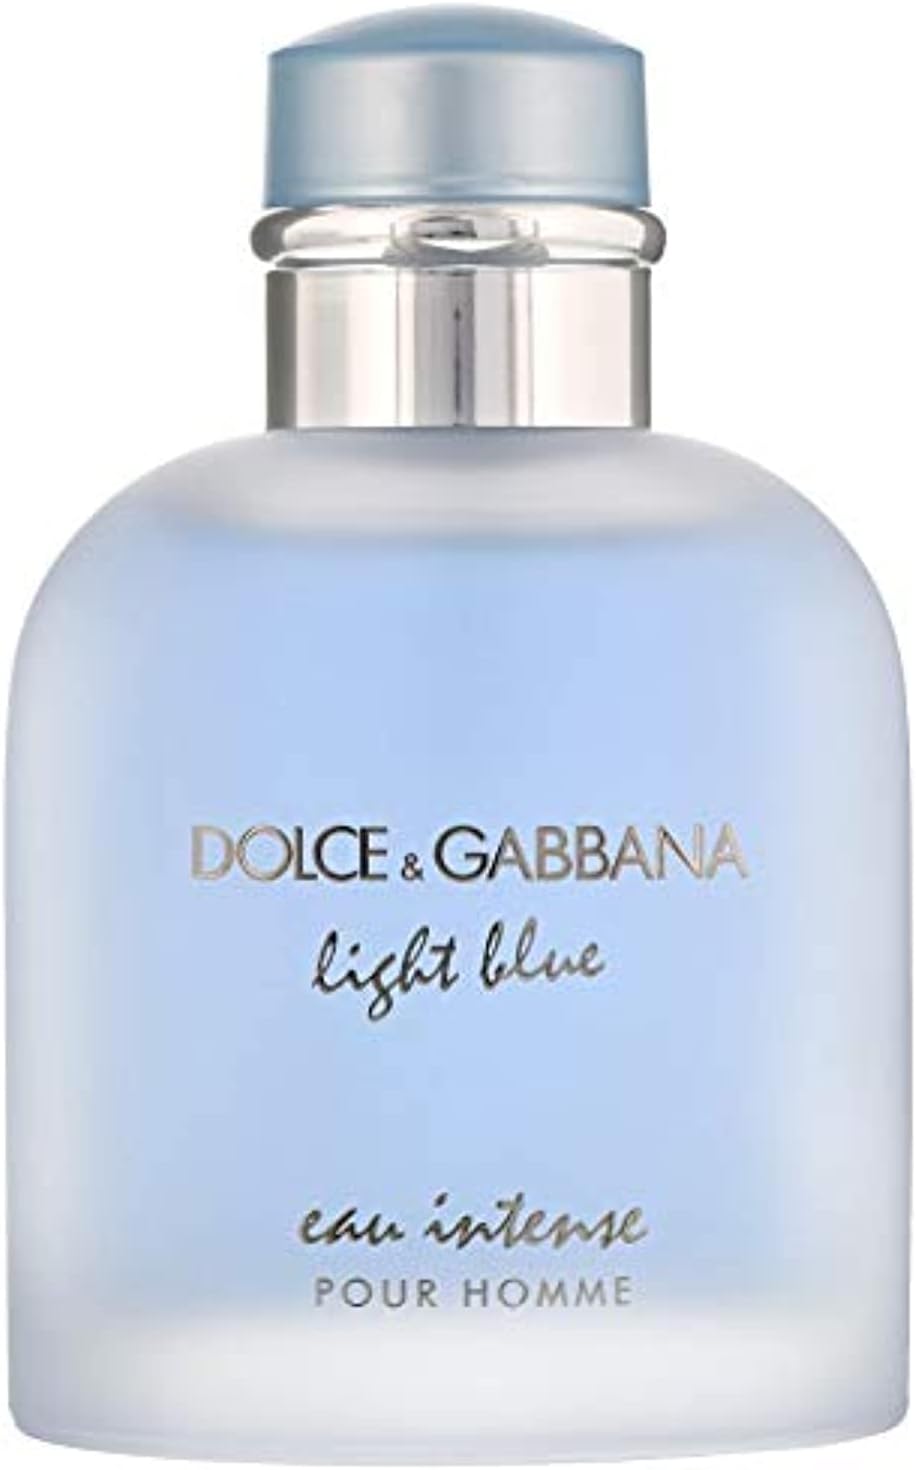 ادکلن مردانه دولچه گابانا مدل Dolce  Gabbana Light Blue 100 ml - ارسال 10 الی 15 روز کاری